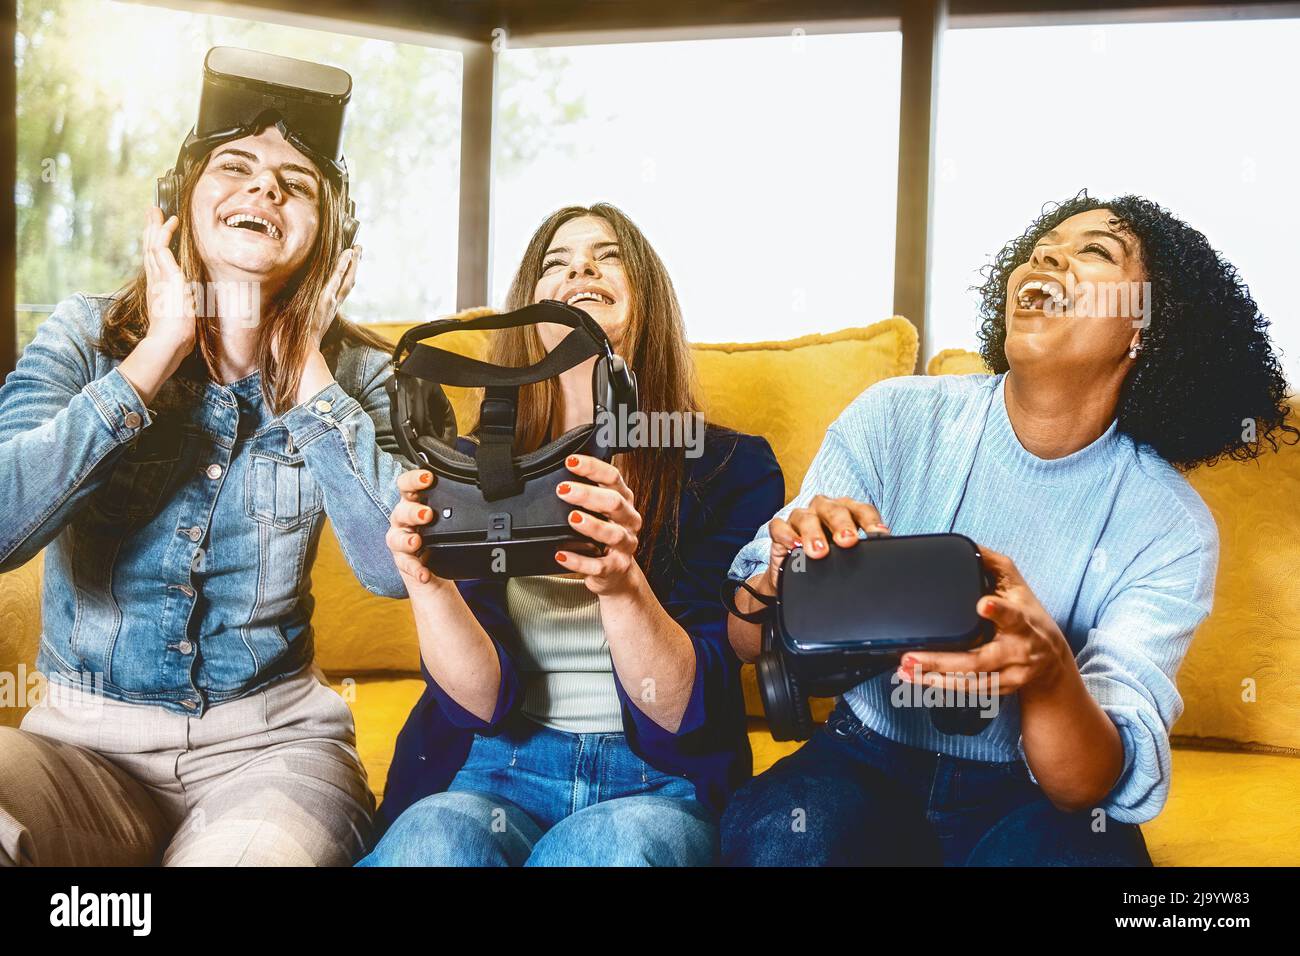 il gruppo interrazziale di giovani donne è divertito dopo un'esperienza di realtà simulata immersiva - le ragazze ridono insieme a 3d cuffie verso il basso - vivido sbiadito Foto Stock